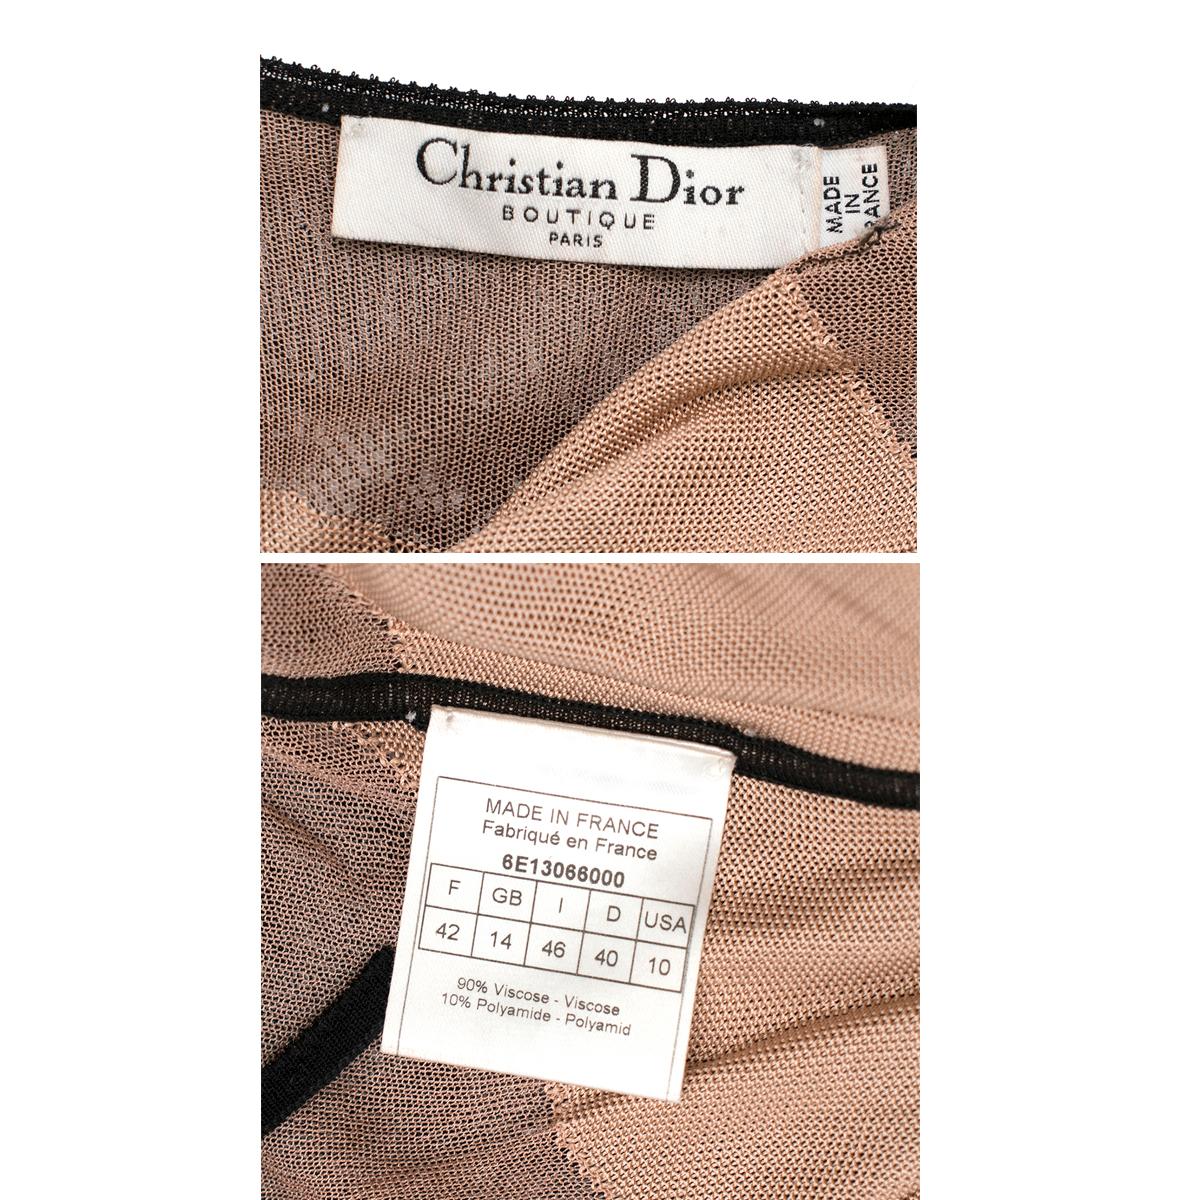 Christian Dior Boutique Black & Nude Lace Dress - Size L 4